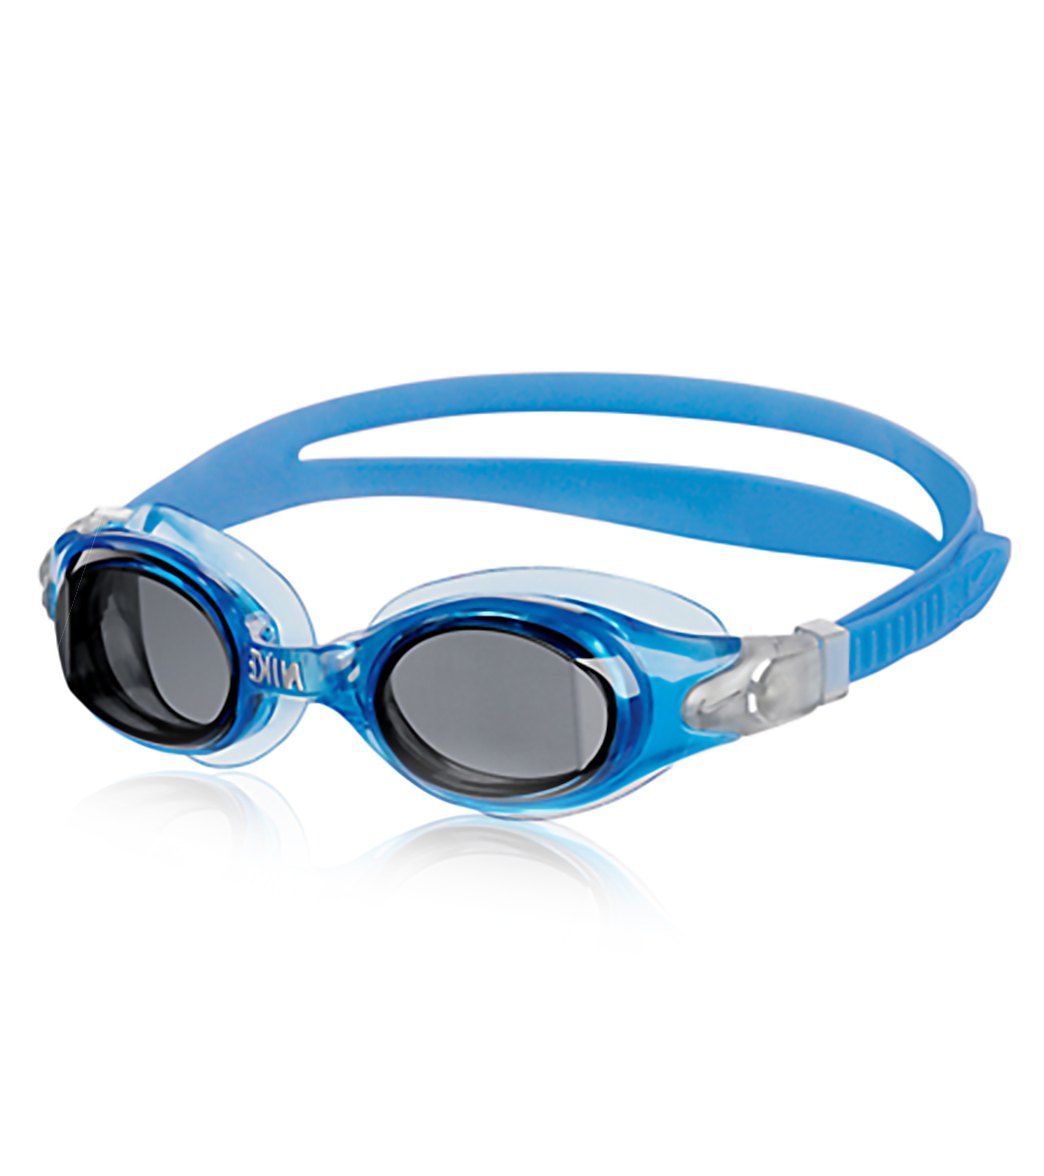 Nike Swim Reflex II Goggles at SwimOutlet.com